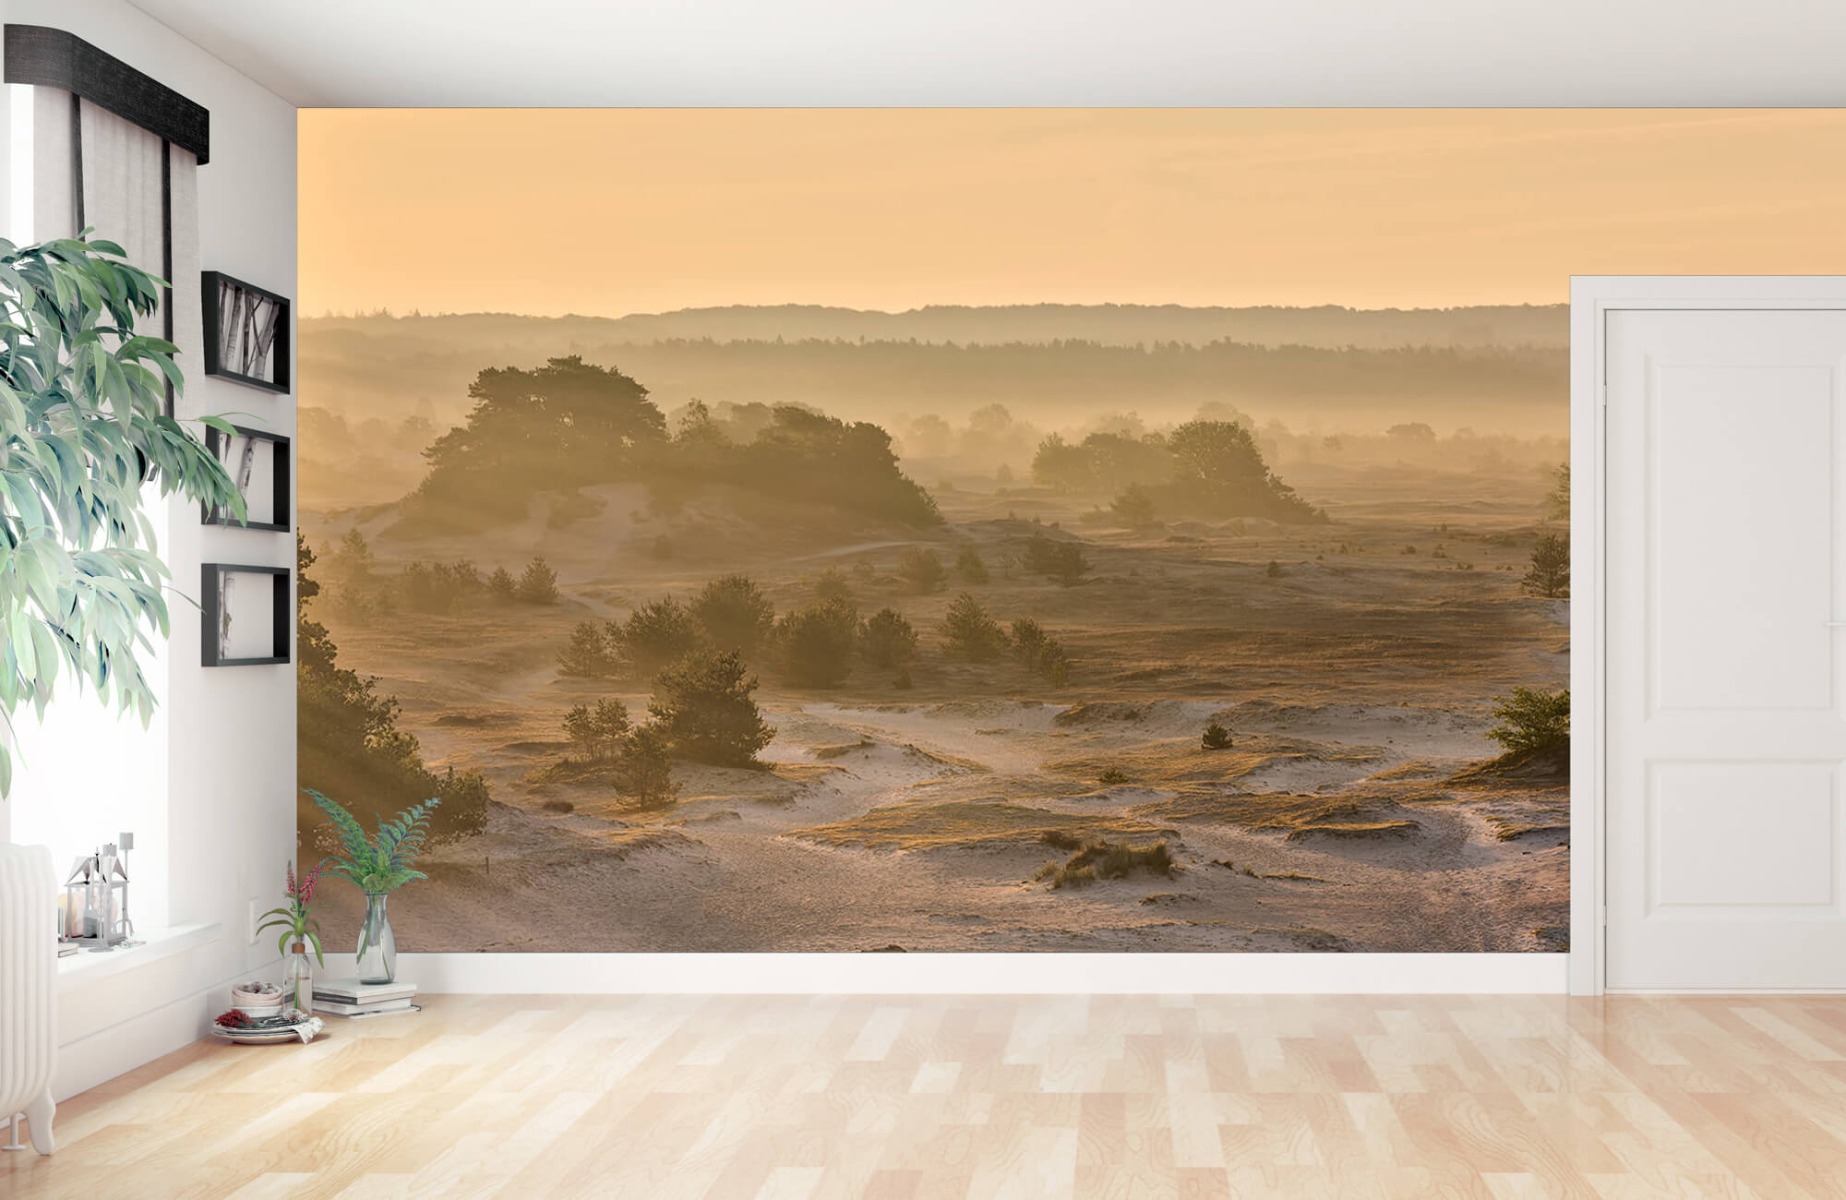 Landscape wallpaper - Kootwijker sand - Bedroom 12